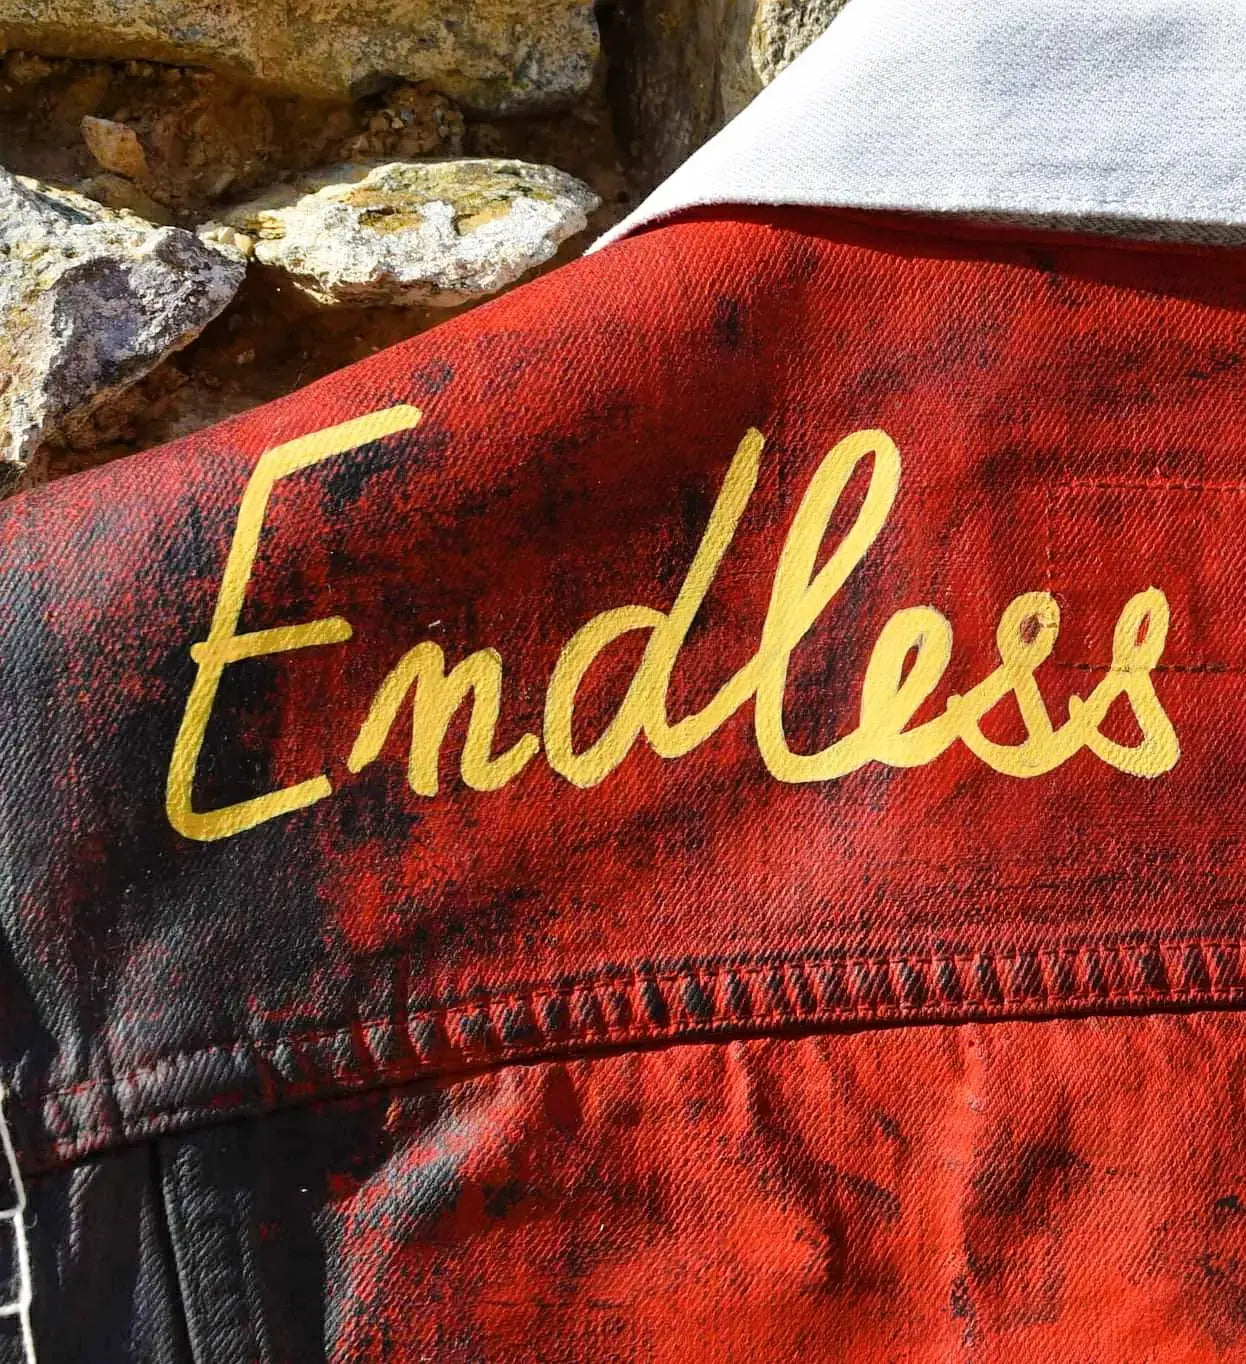 "ENDLESS RIDE" Handpainted Levi's Jacket/ veste peinte à la main